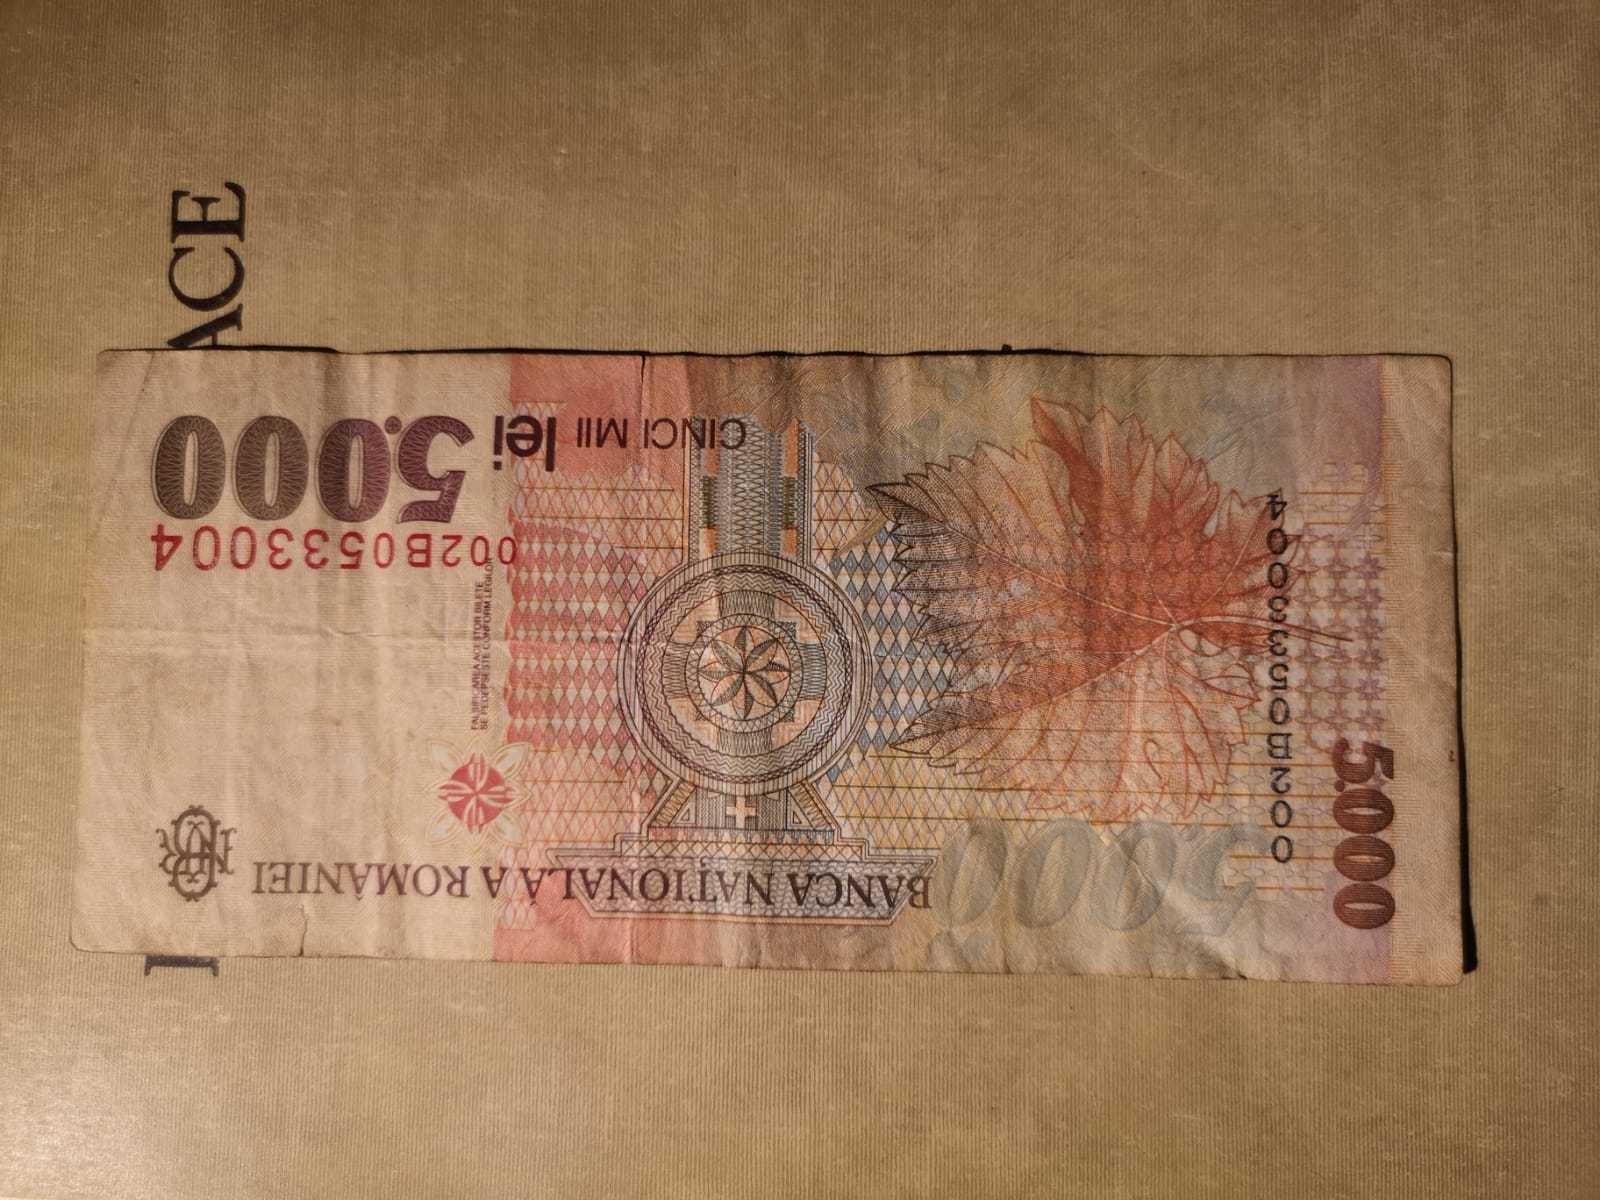 Bancnote vechi Romania